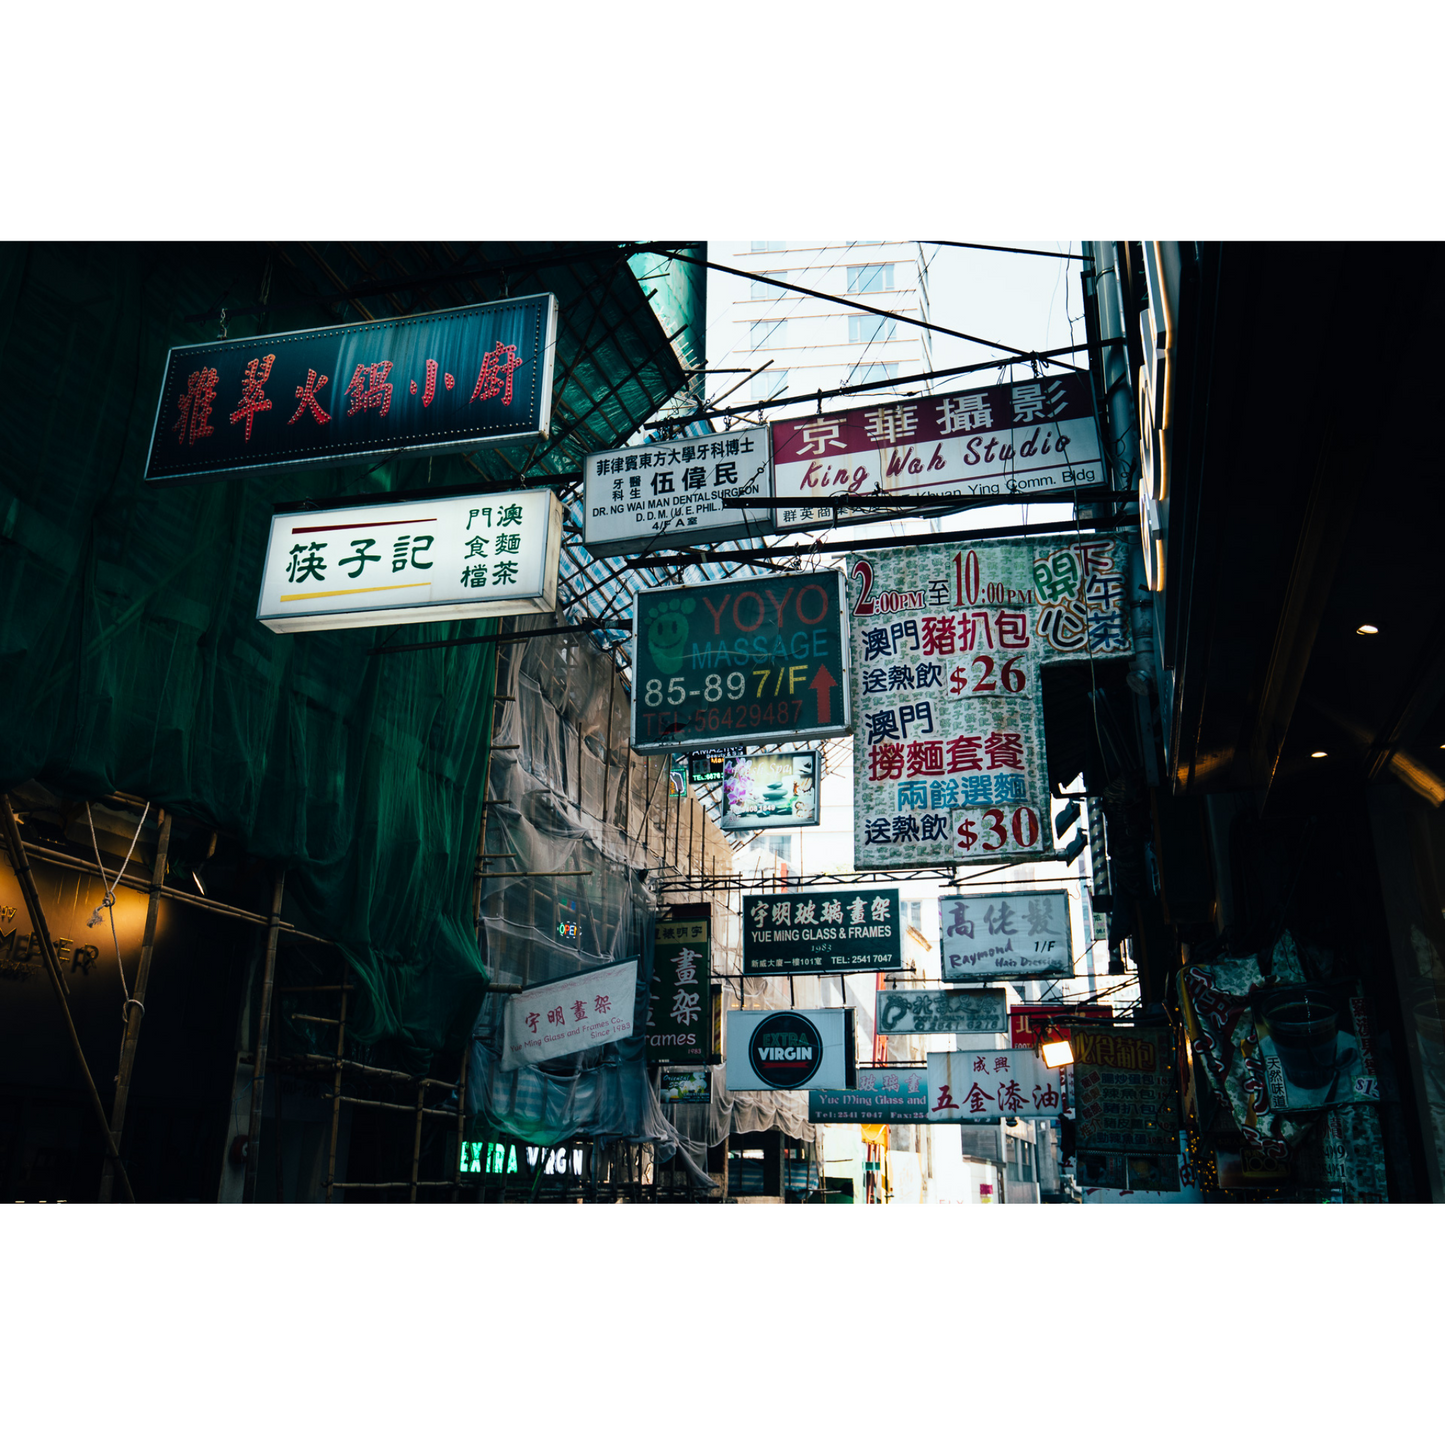 Streets of Hongkong